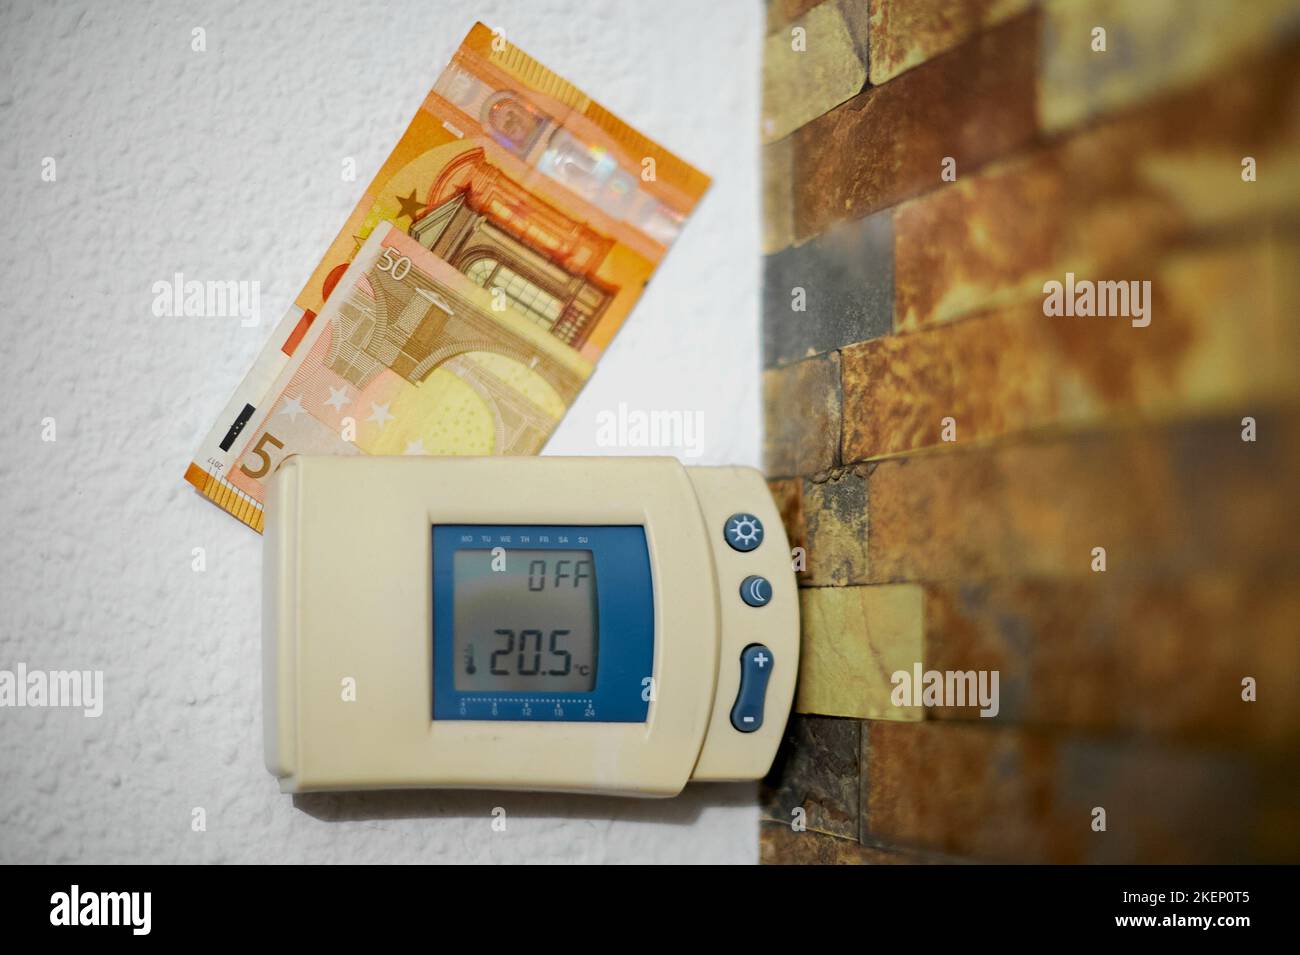 Heizthermostat-Controller mit Euro-Bargeld auf der Oberseite an einer Wand eines Hauses. Stockfoto